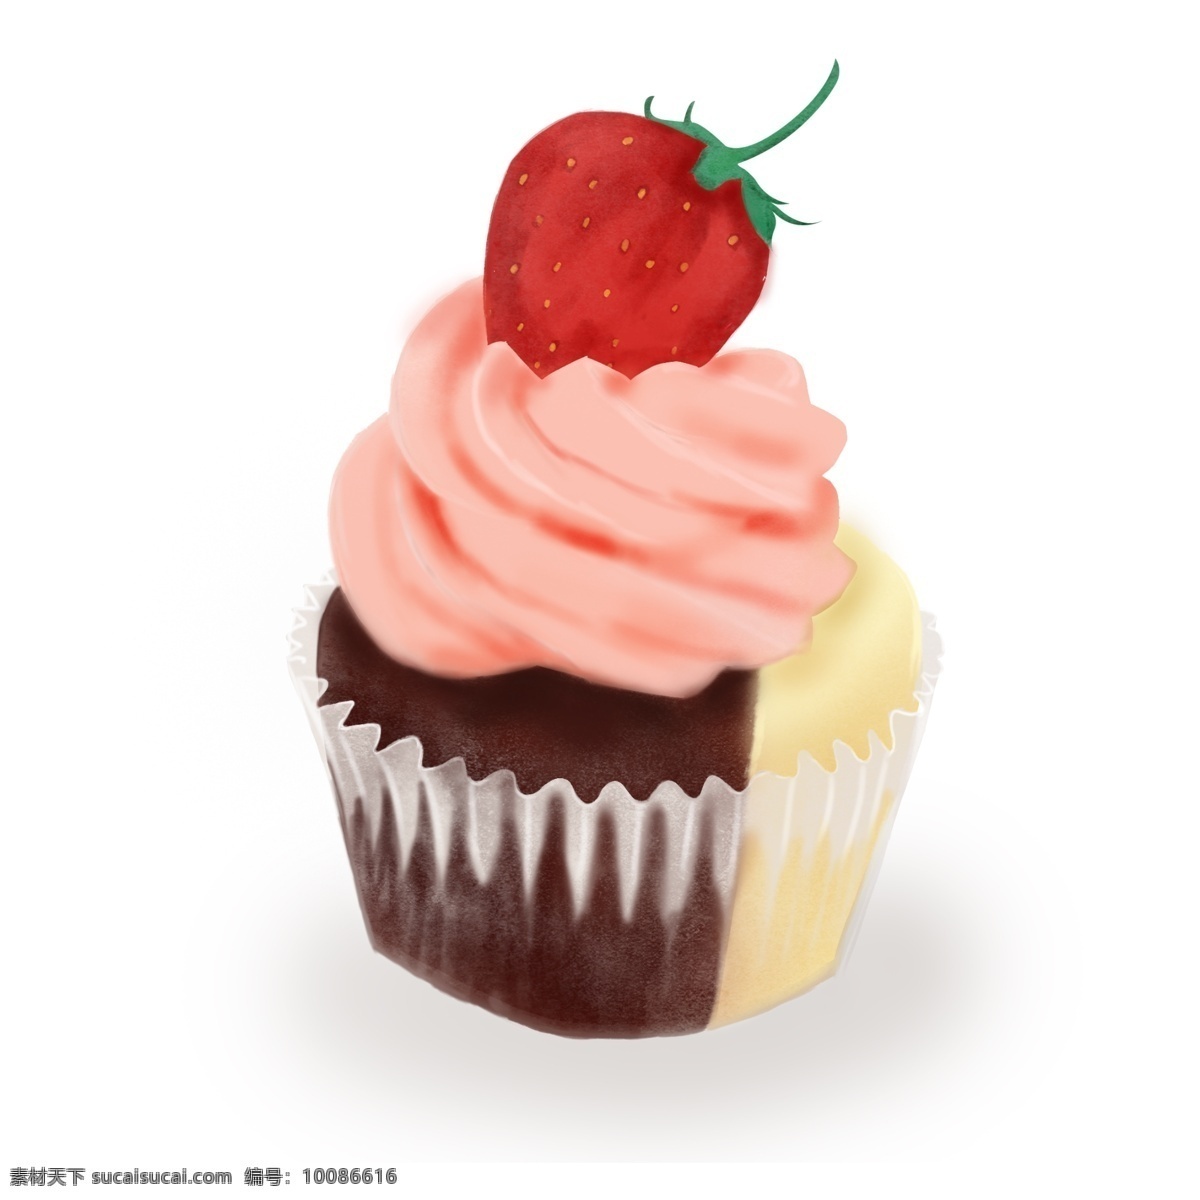 原创 手绘 卡通 清新 甜美 水果 纸杯 蛋糕 卡通蛋糕 手绘蛋糕 水果蛋糕 草莓蛋糕 纸杯蛋糕 手绘纸杯蛋糕